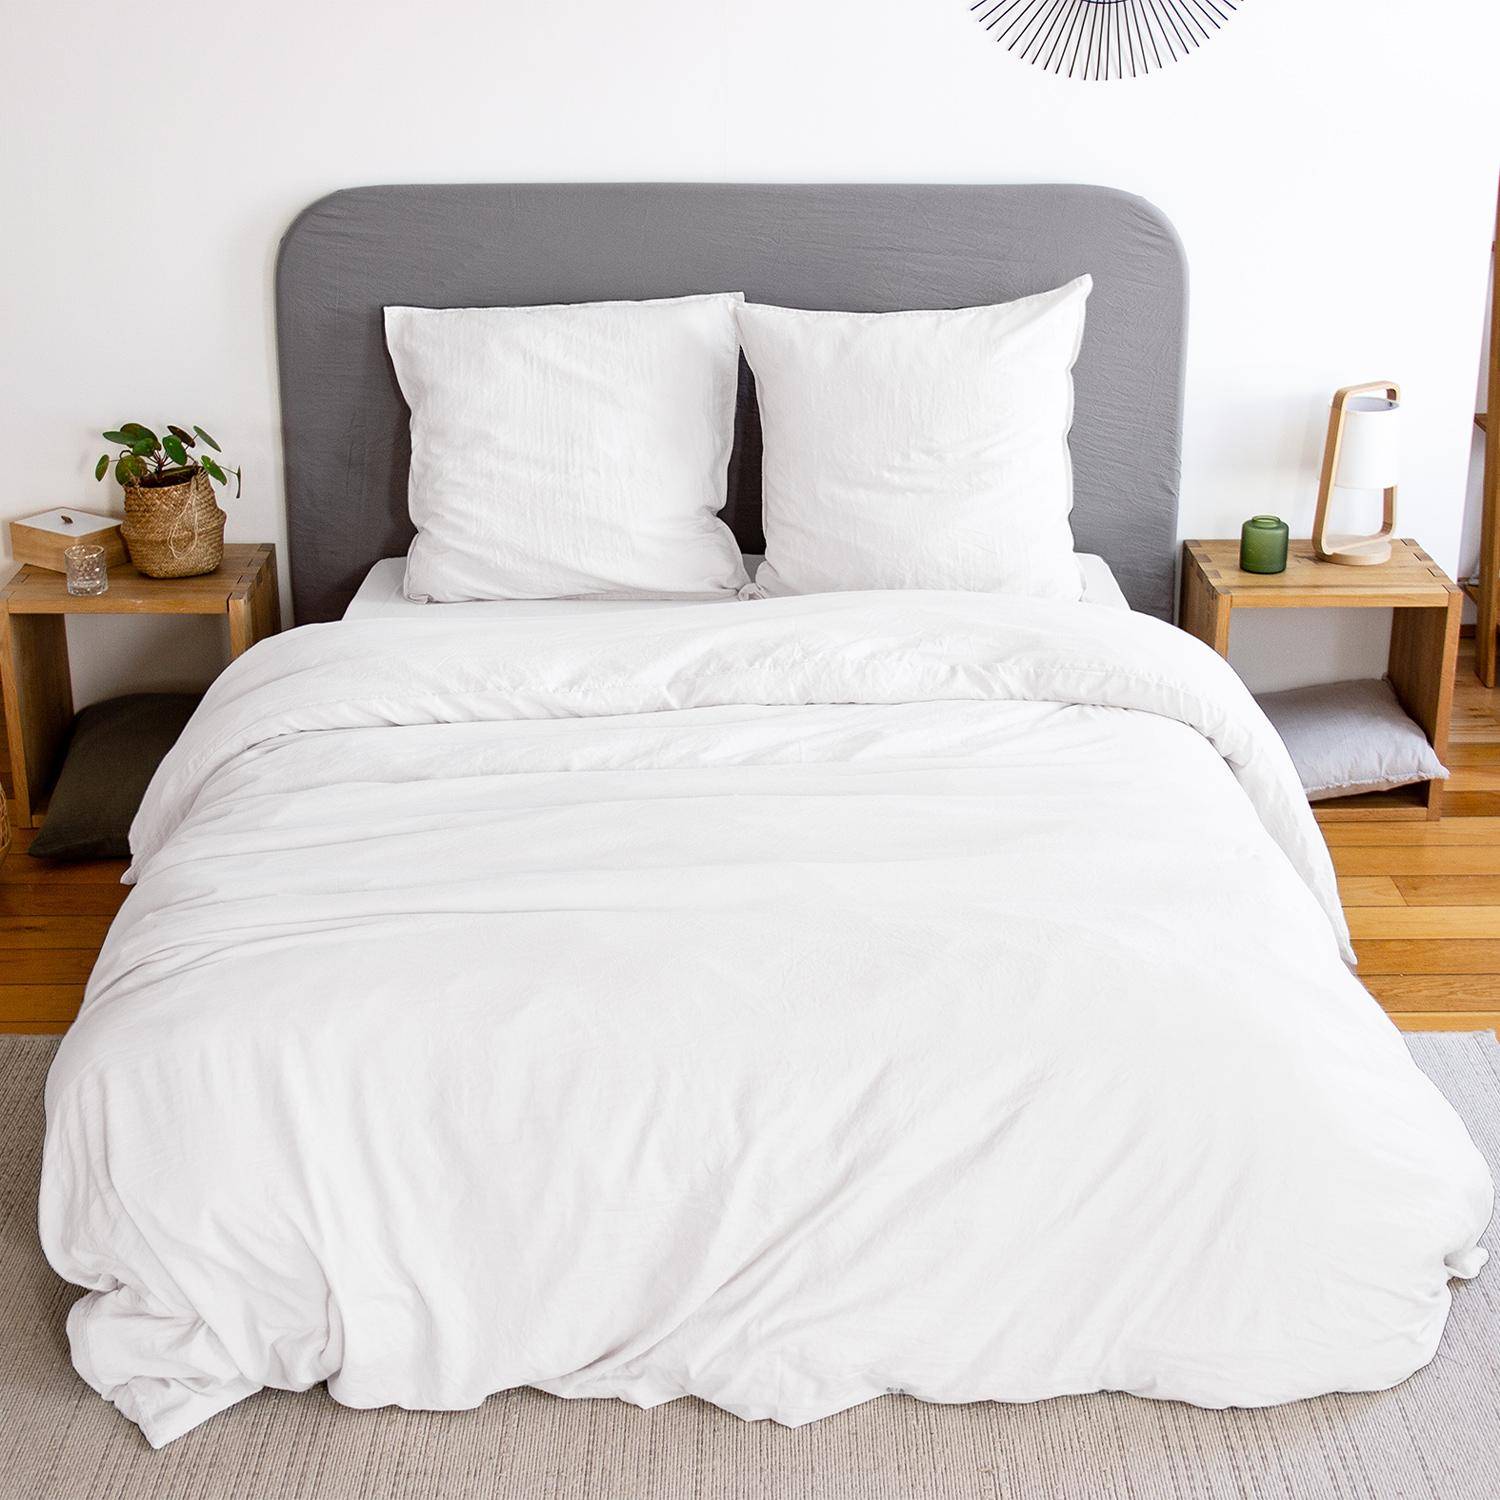 Bettwäsche-Set aus vorgewaschener Mikrofaser in weiß 260 x 240 cm für Doppelbetten, 1 Bettbezug und 2 Kissenbezüge,sweeek,Photo1